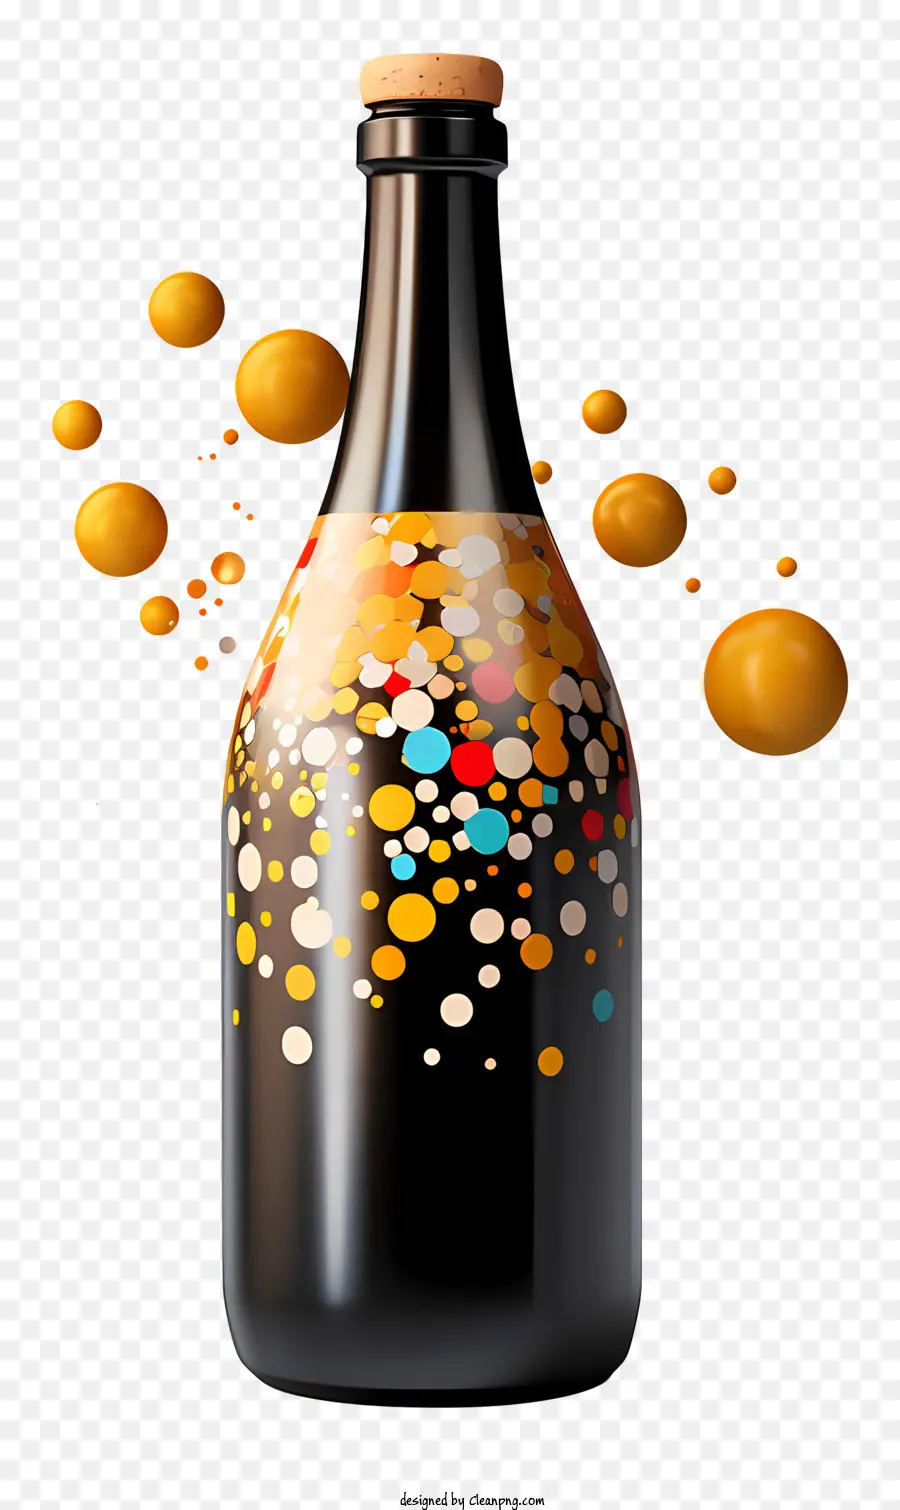 chai đen nhãn trắng bong bóng nhiều màu trong suốt - Hình ảnh chi tiết độ phân giải cao của chai chứa đầy bong bóng đầy màu sắc